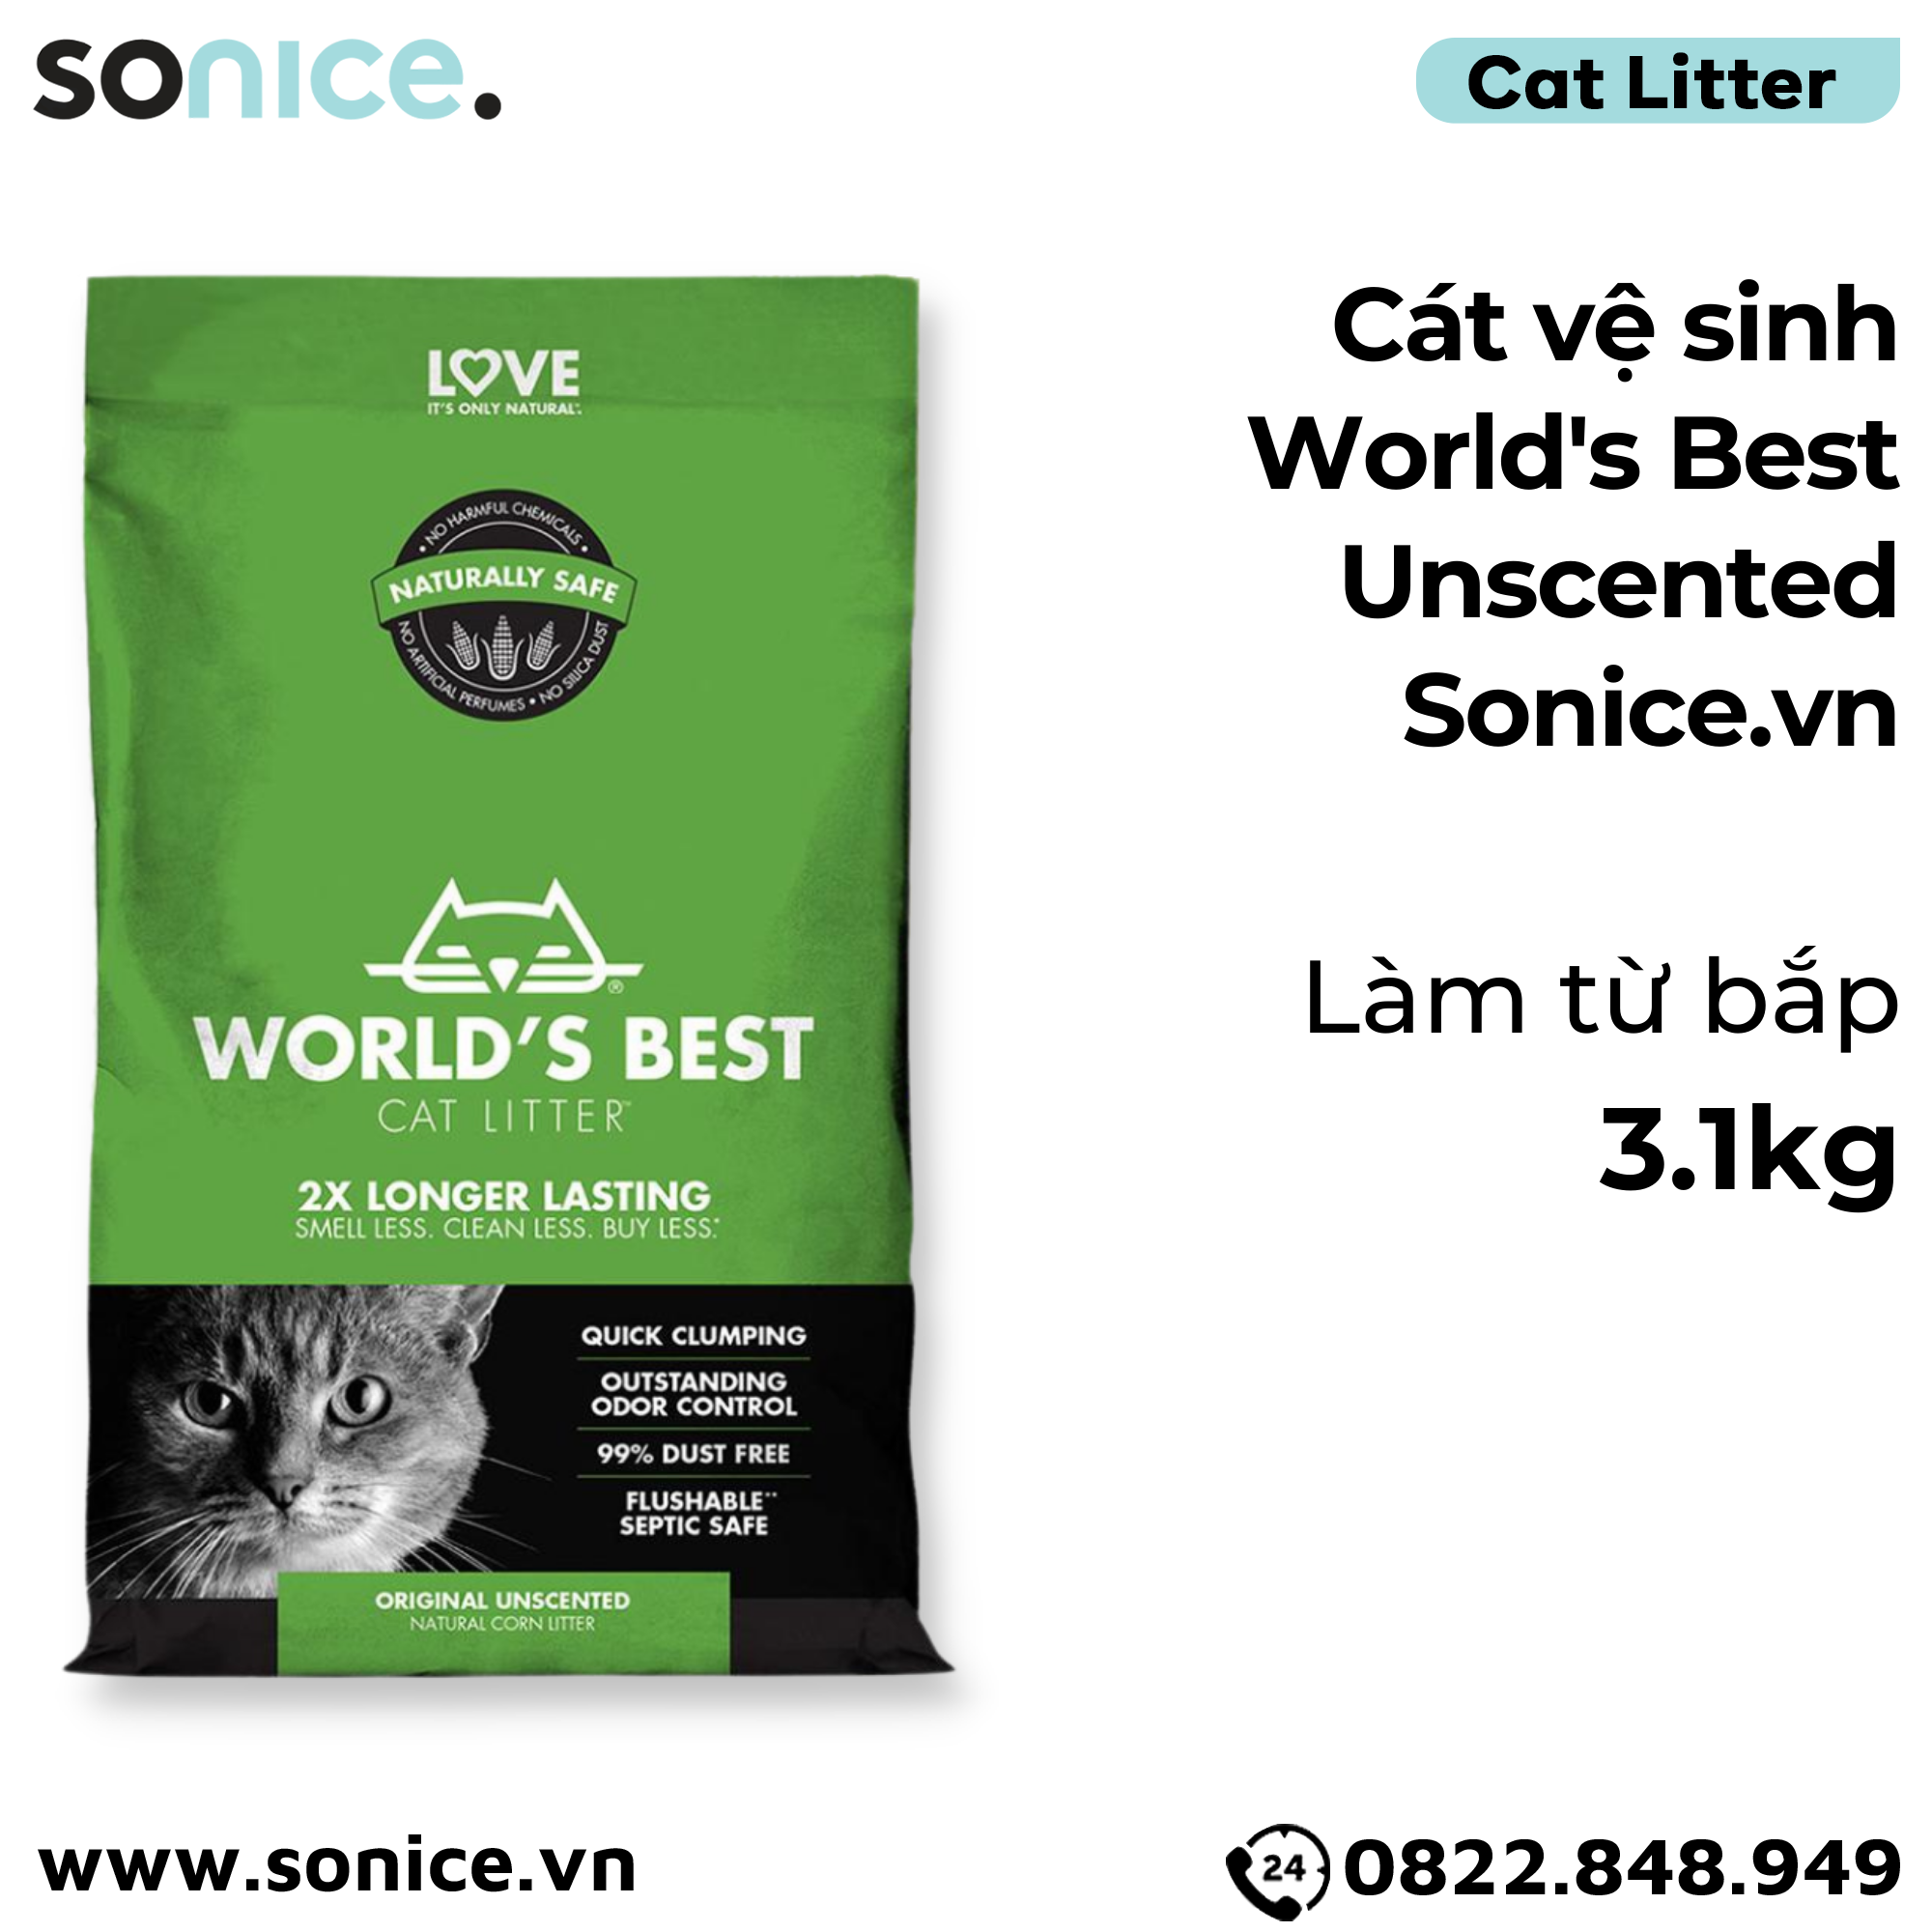  Cát vệ sinh World's Best Unscented 3.1kg - làm từ bắp - Corn Cat Litter SONICE. 